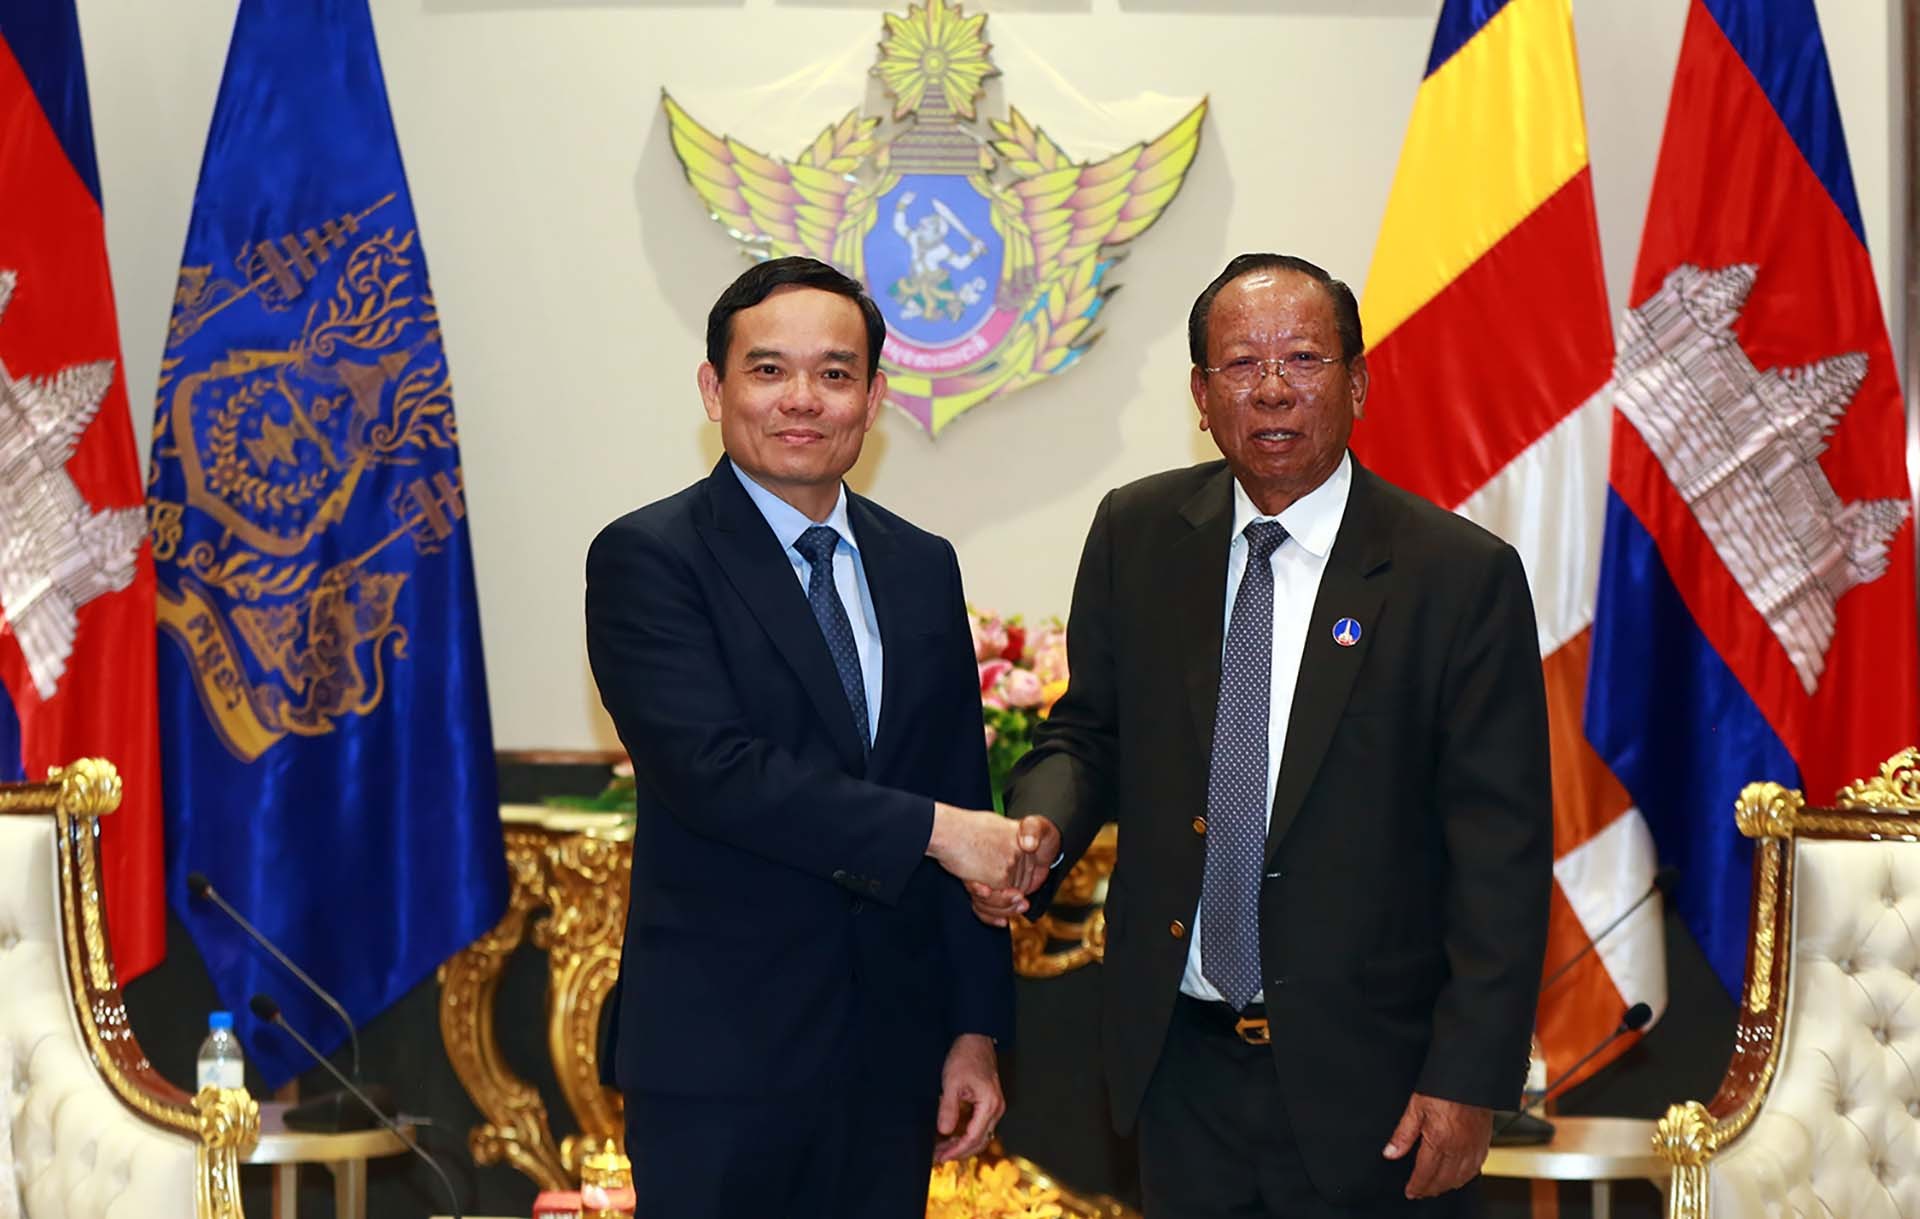 Phó Thủ tướng Trần Lưu Quang đến chào Samdech Tea Banh, Phó Thủ tướng, Bộ trưởng Bộ Quốc phòng Vương quốc Campuchia.  (Nguồn: VGP)